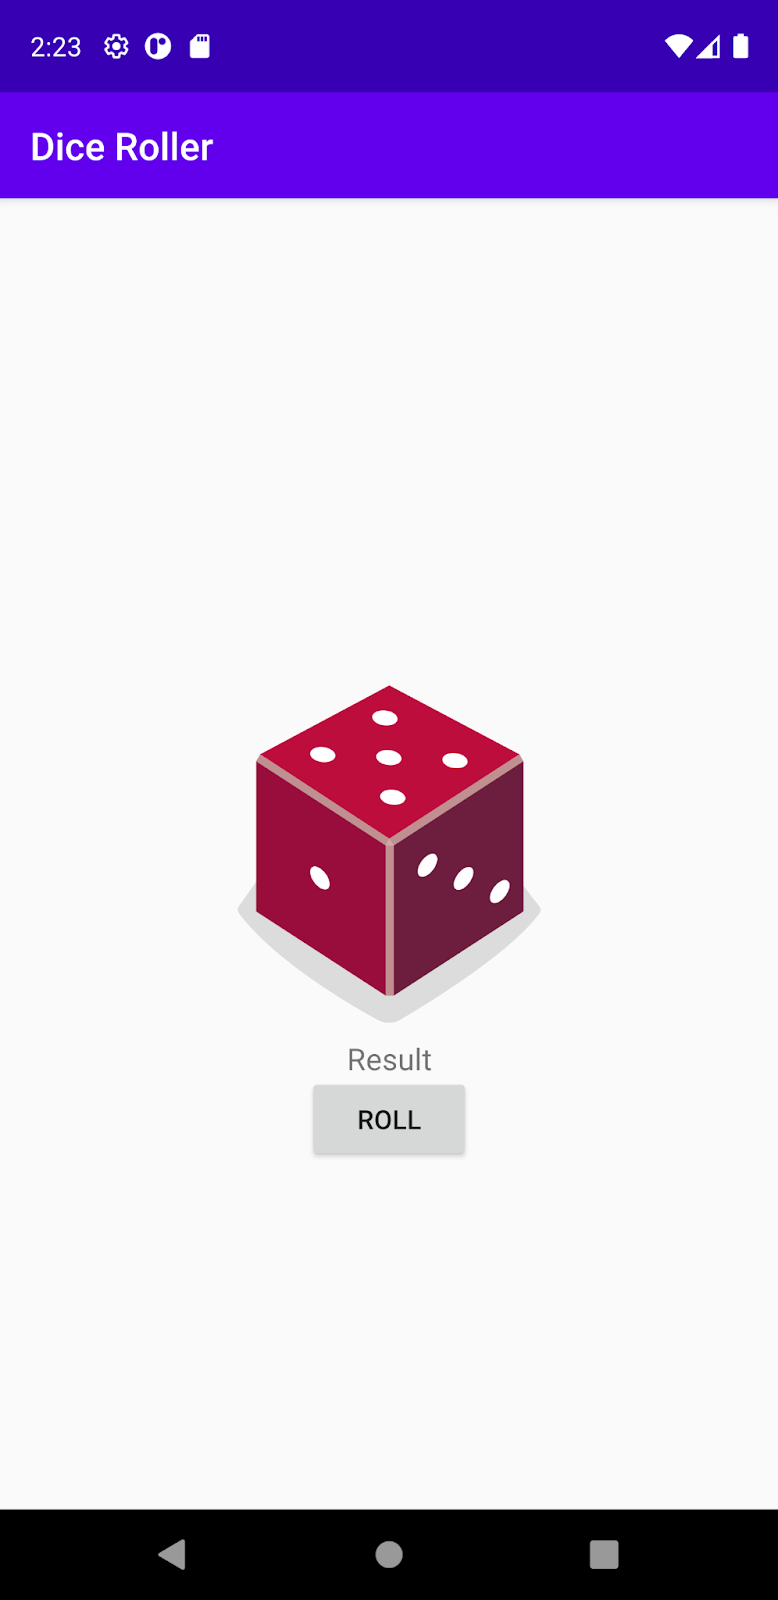 Aplikasi DiceRoller dengan kotak yang bertuliskan "Result" sebagai placeholder.